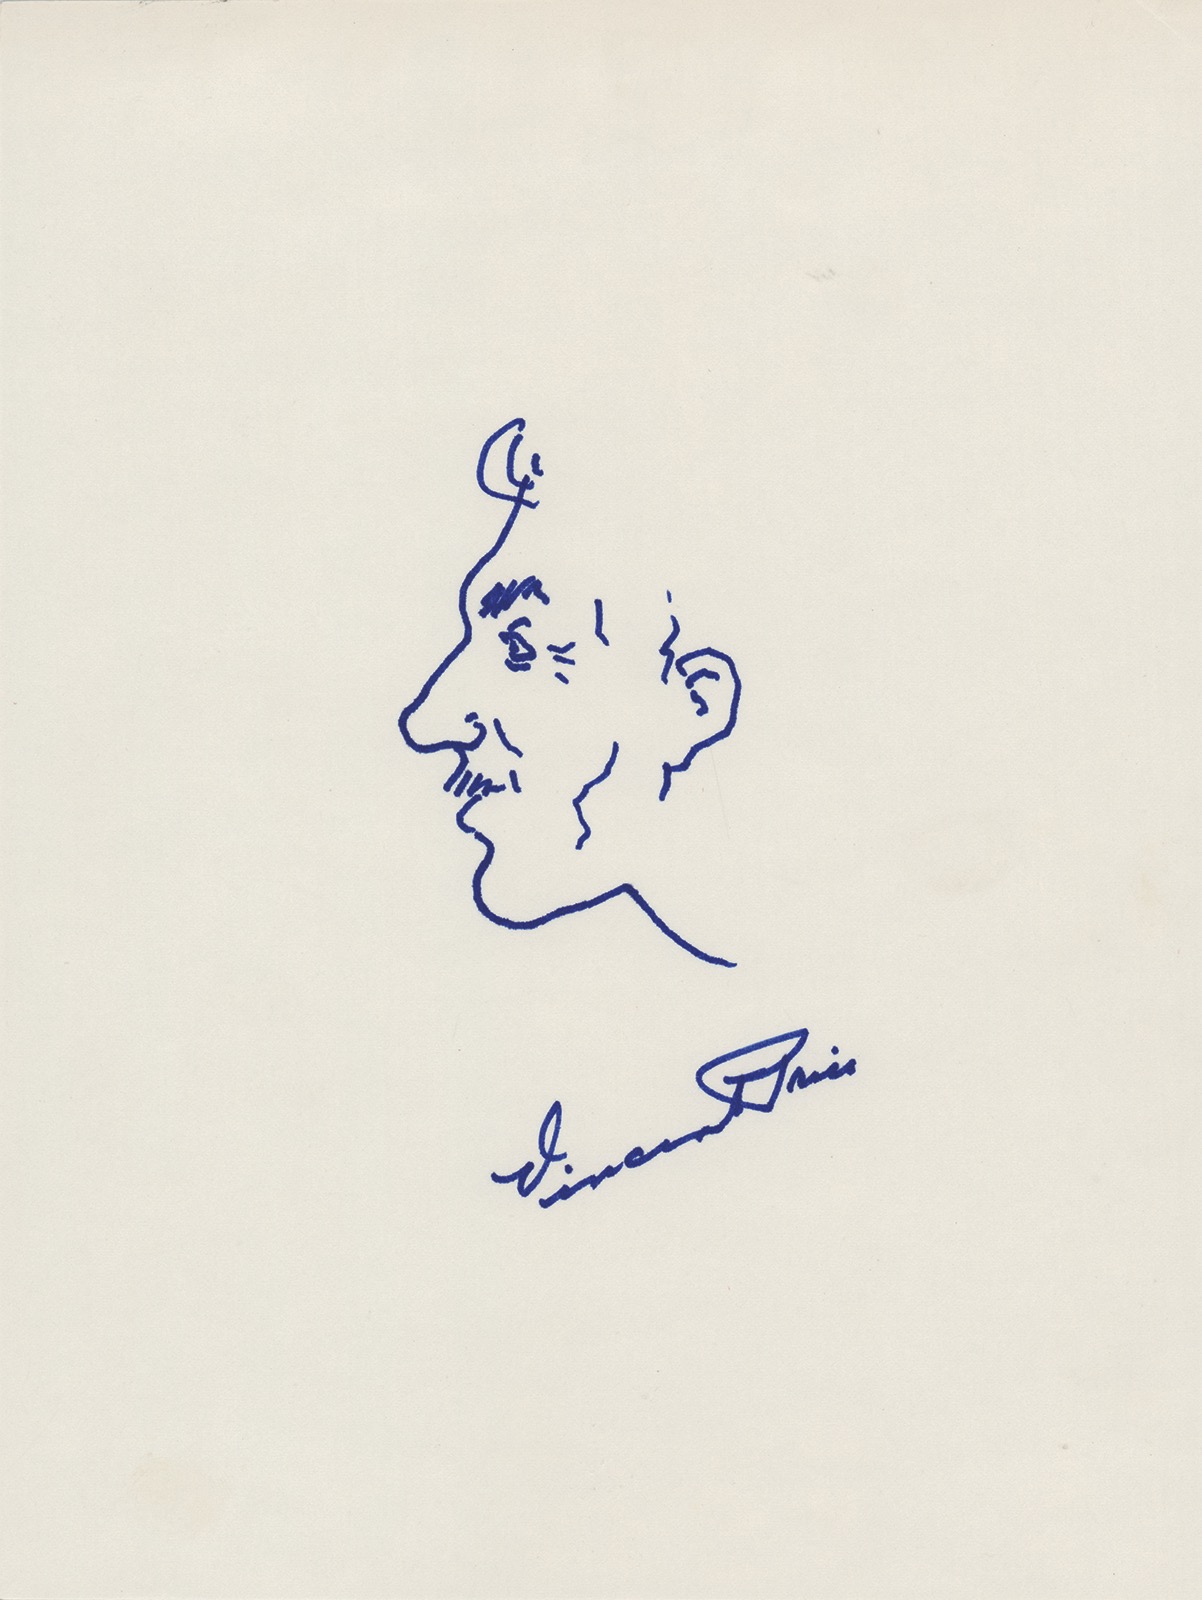 Lot #607 Vincent Price Original Self-Portrait